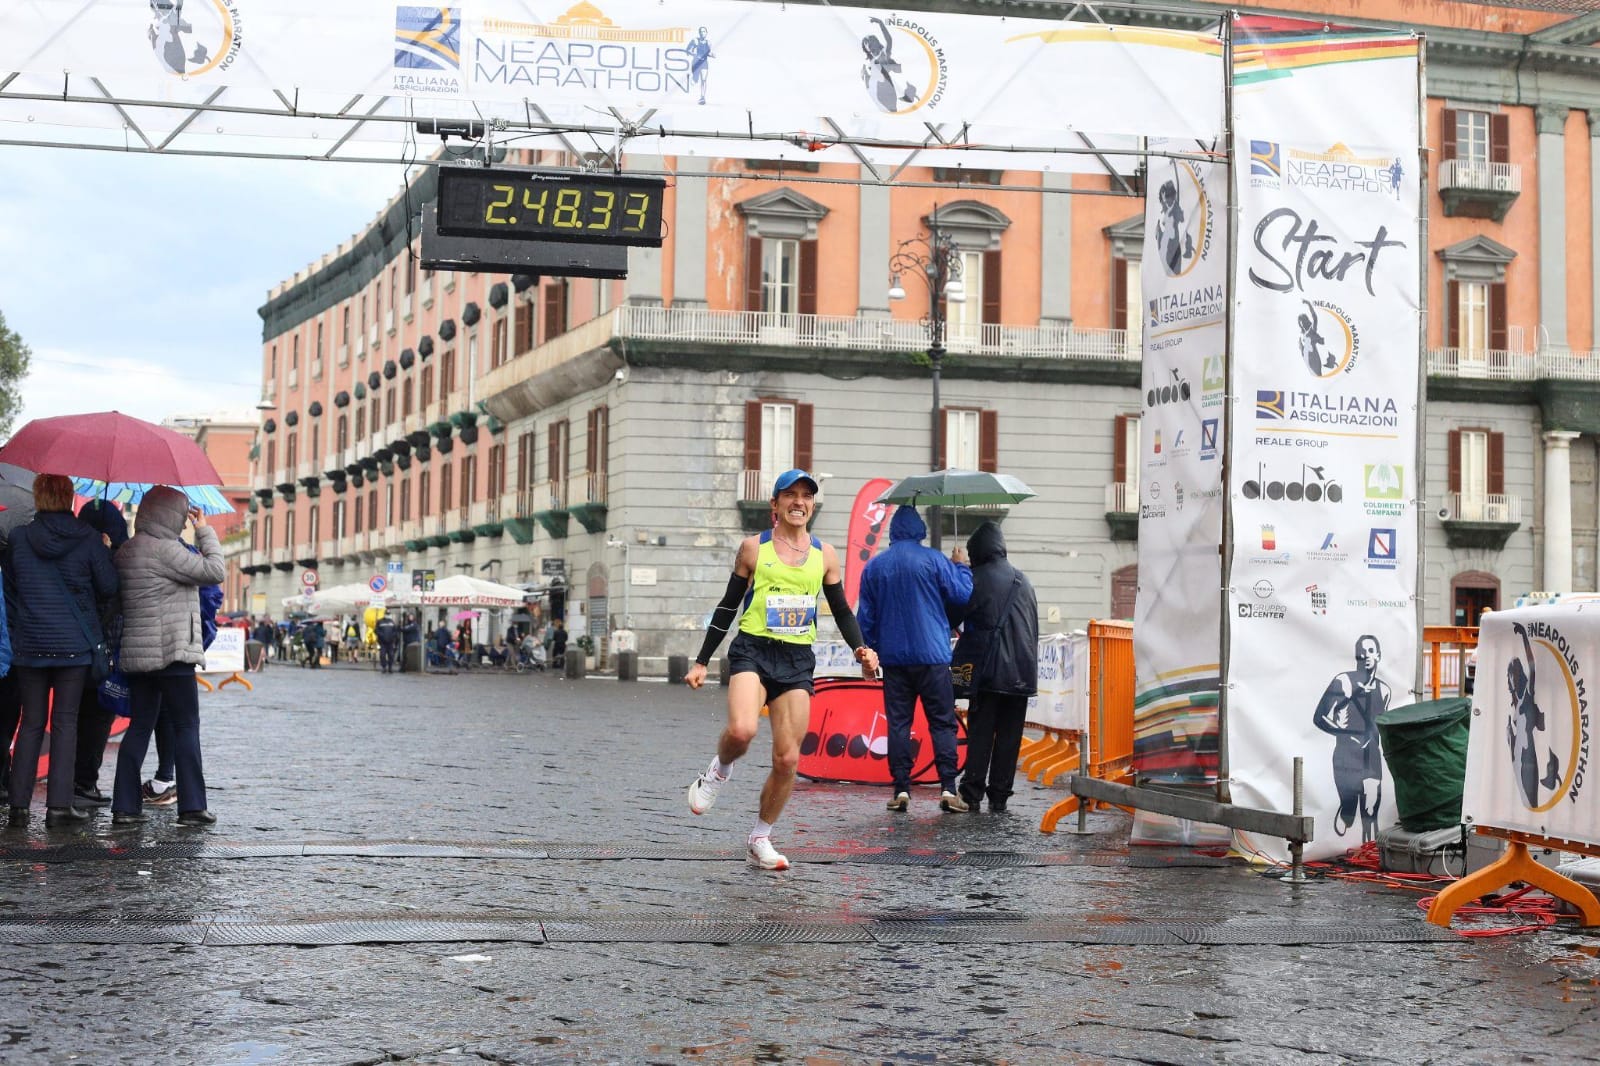 Riccardo Volpe il podista di Polla nella top ten della maratona di Napoli